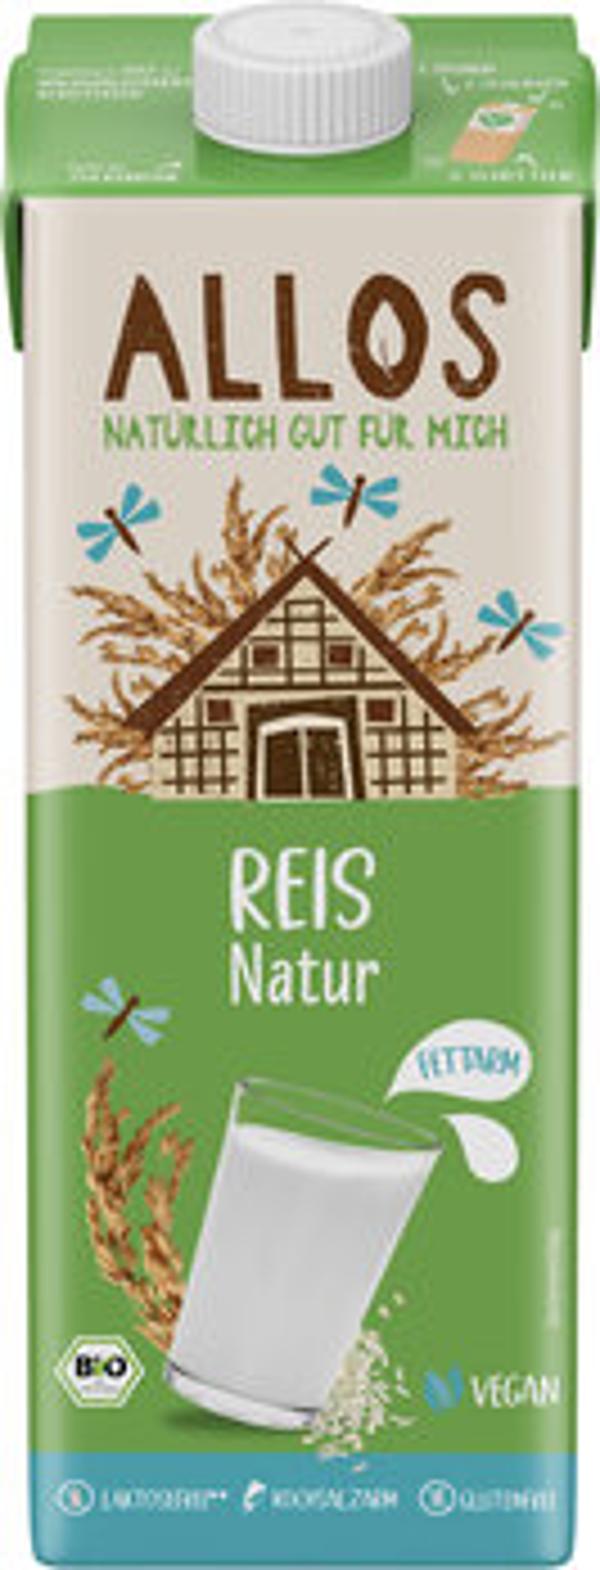 Produktfoto zu Reisdrink Naturell [1l]